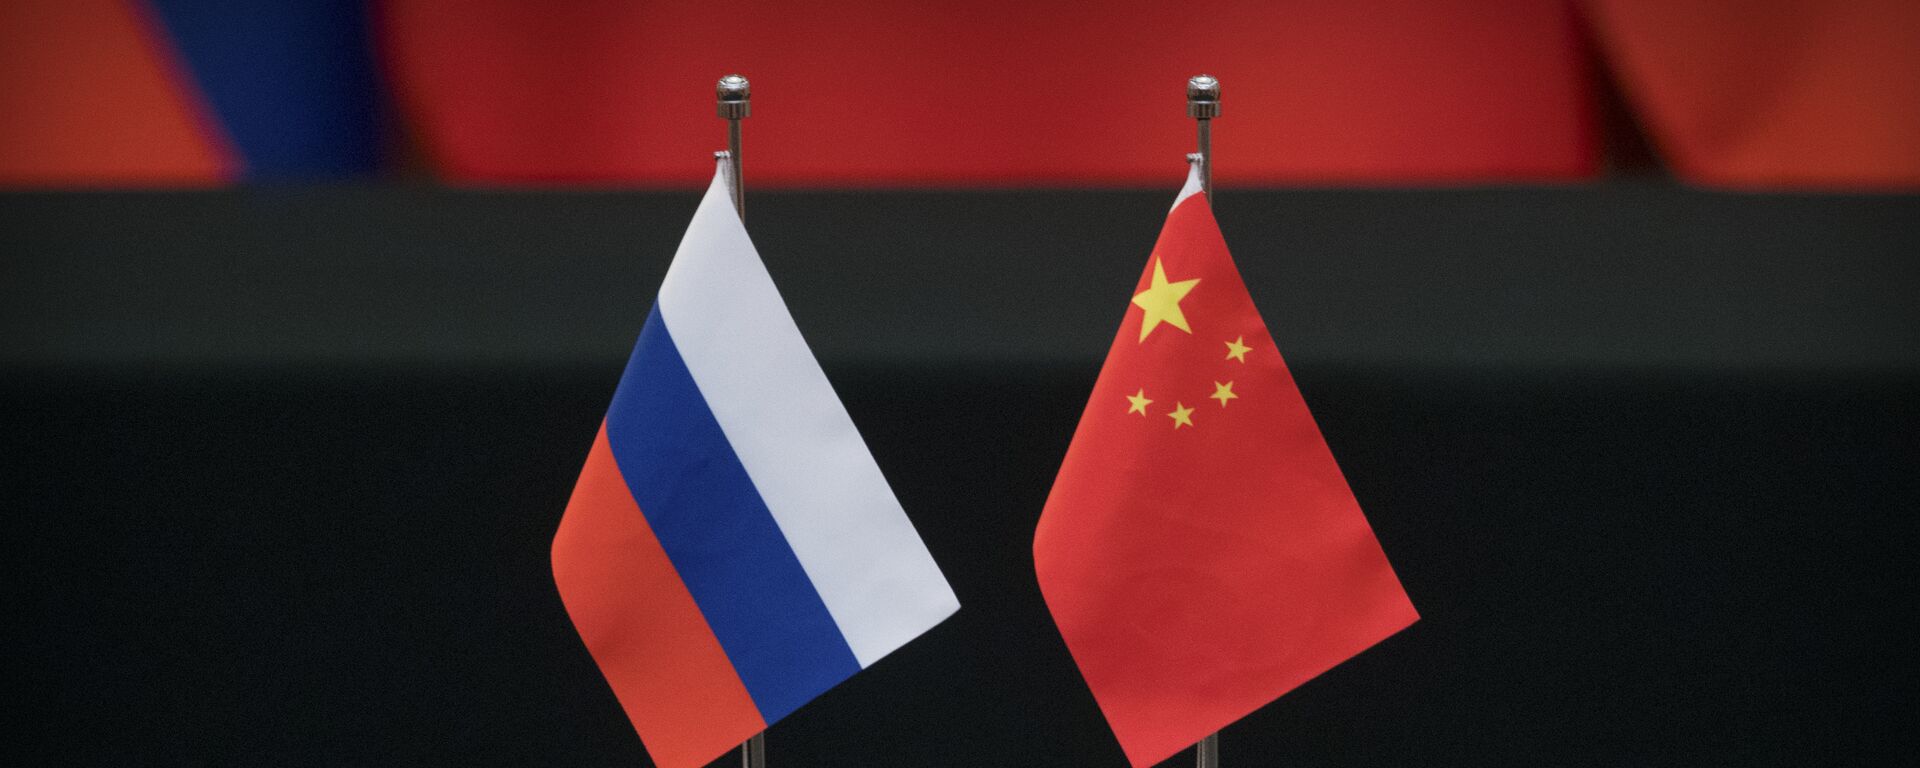 Las banderas de Rusia y China - Sputnik Mundo, 1920, 23.10.2022